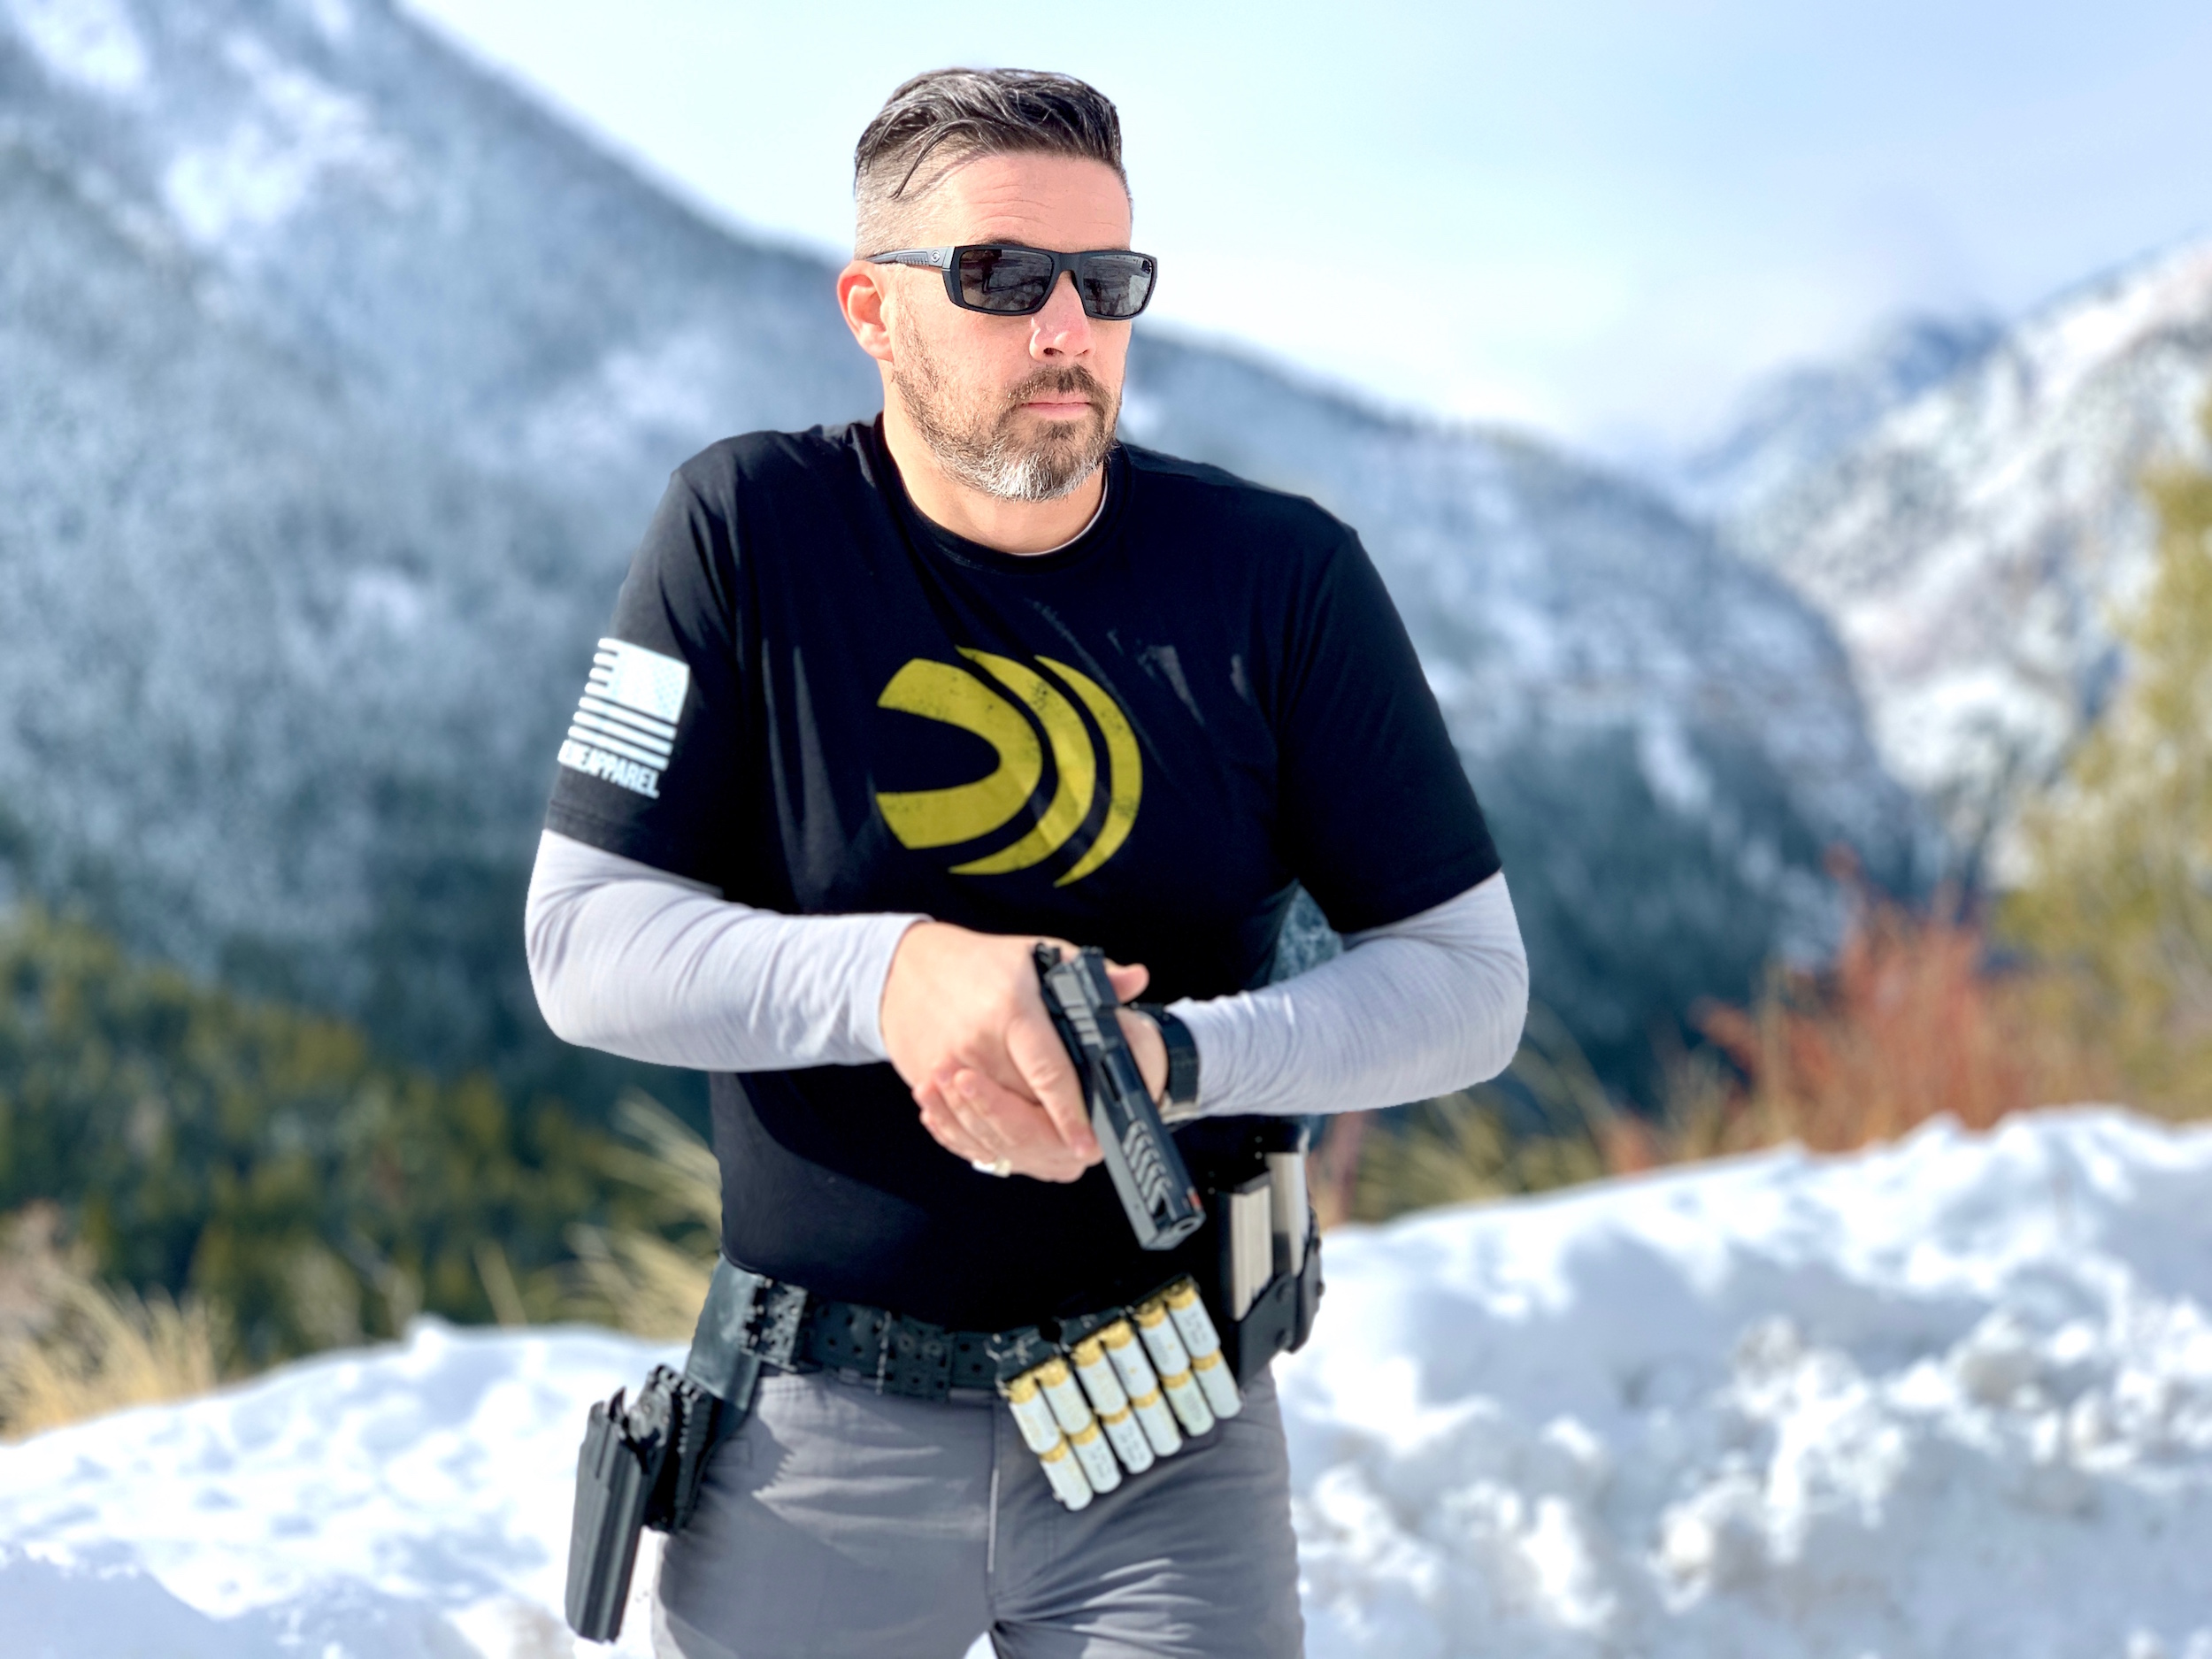 Sean Burrows Competitive 3-GUn Shooter Team Federal Premium